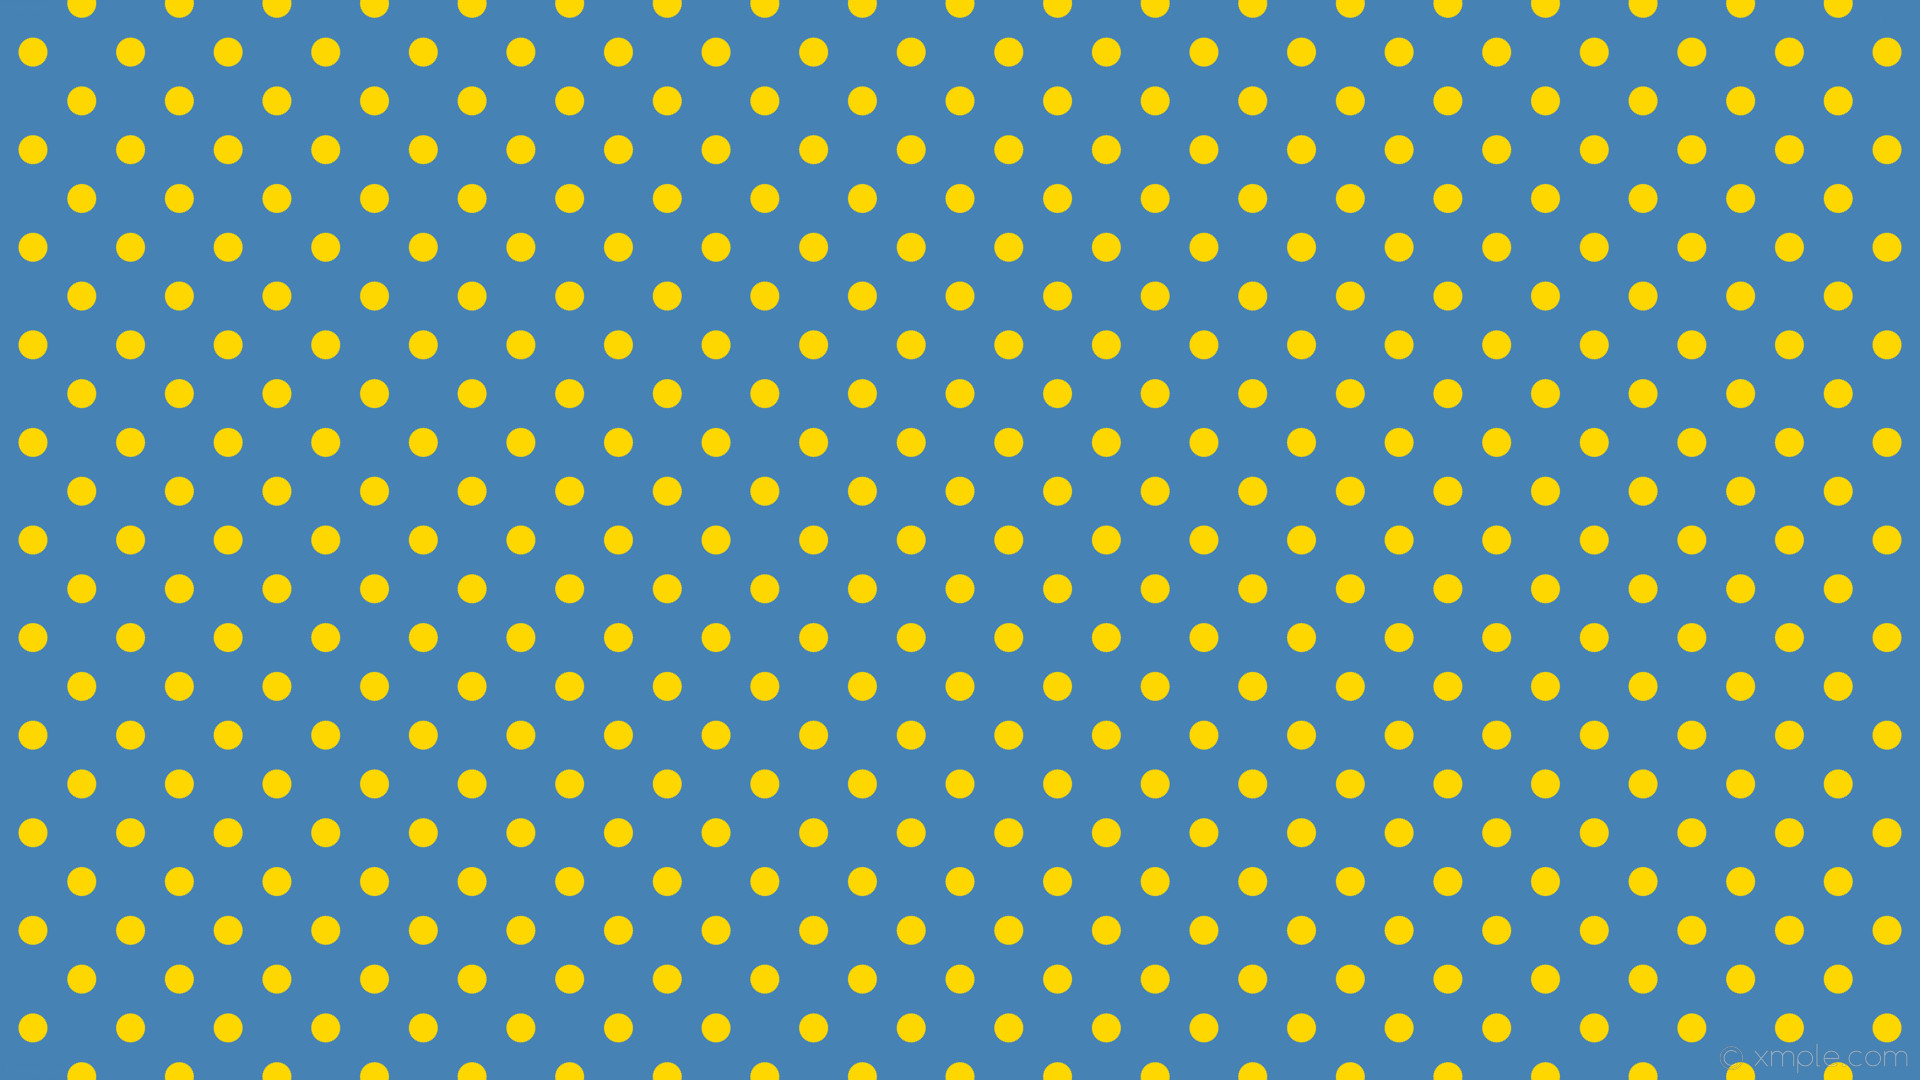 1920x1080 wallpaper dots spots blue polka yellow steel blue gold #4682b4 #ffd700 315Â°  29px